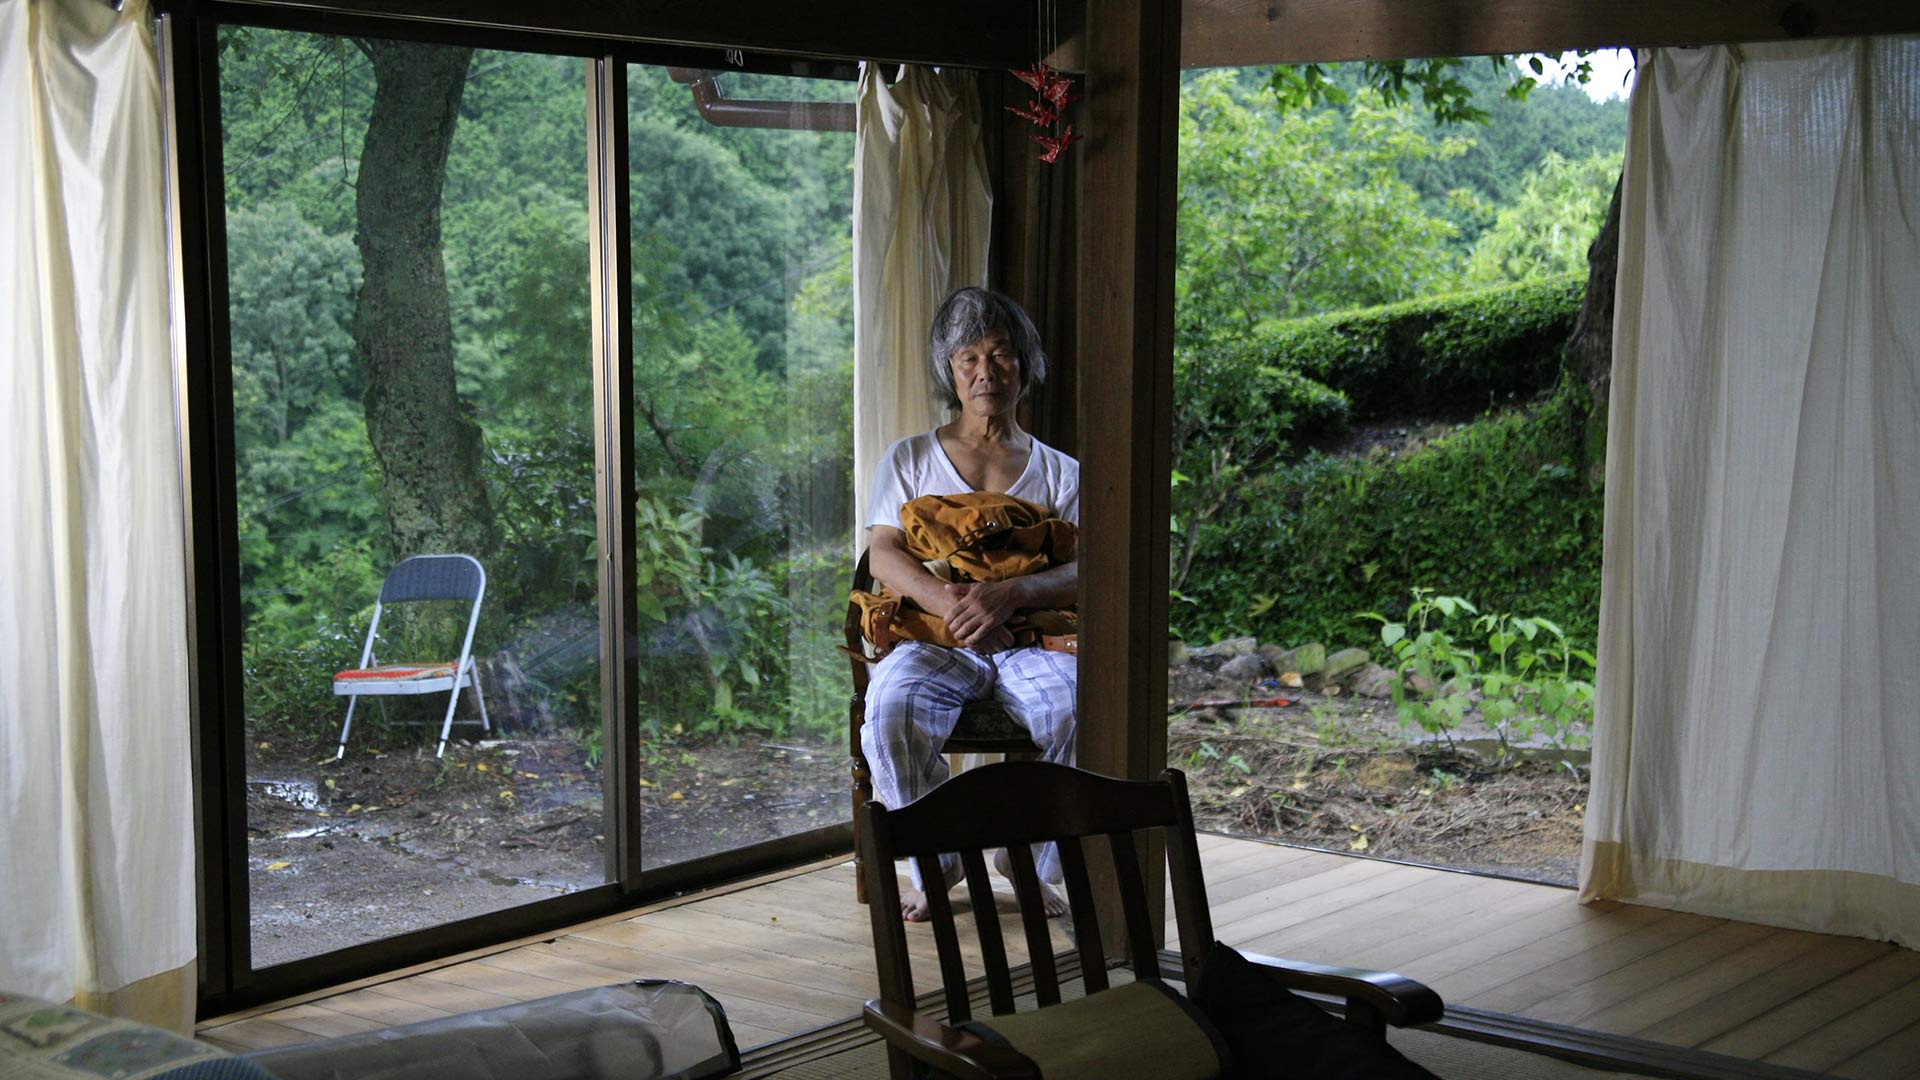 ماچیکو در جنگل در فیلم جنگل سوگوار